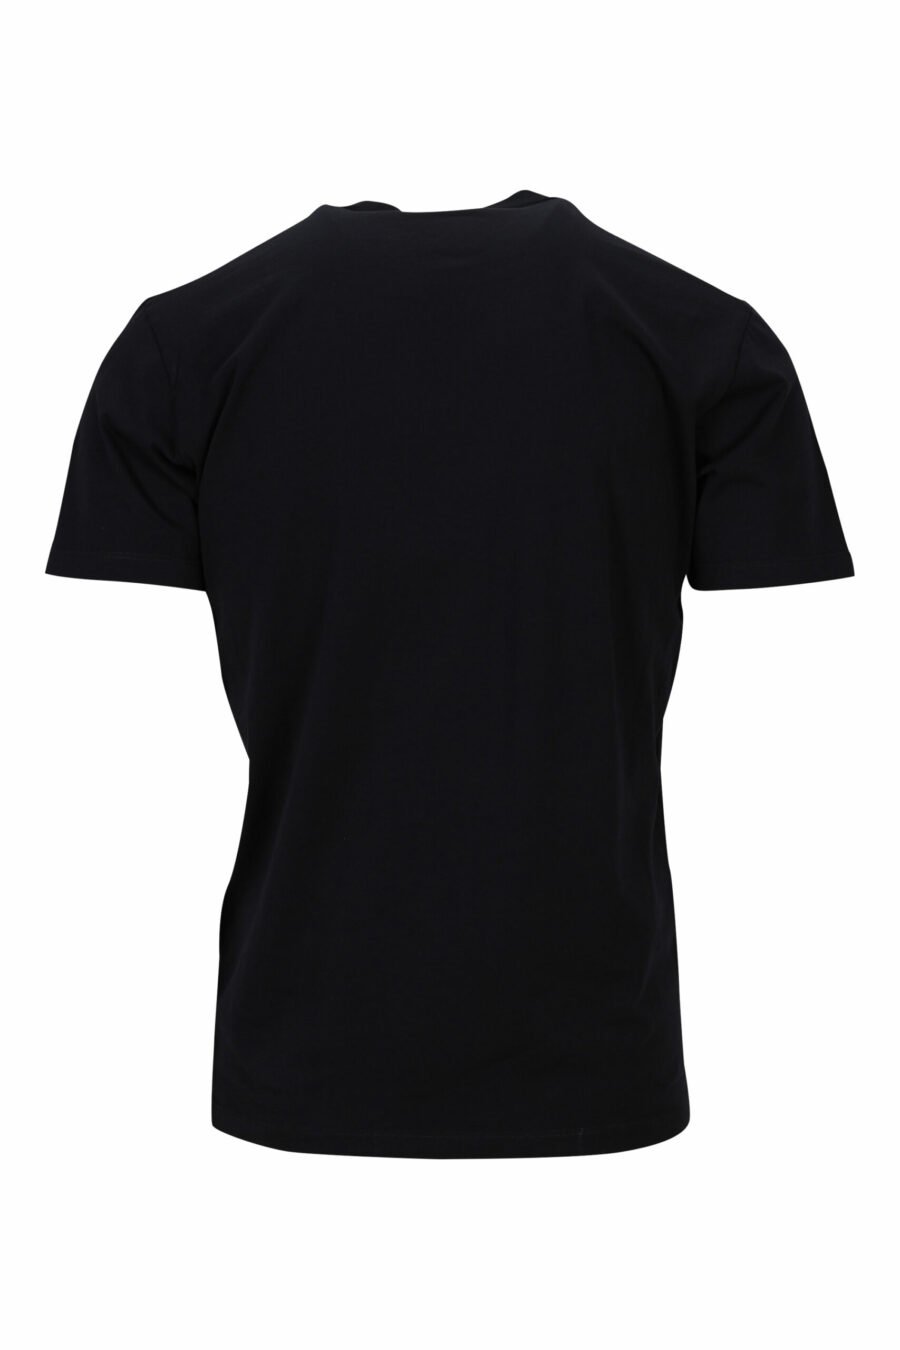 T-shirt schwarz mit weißem "suburbans" maxilogo - 8054148503932 1 skaliert